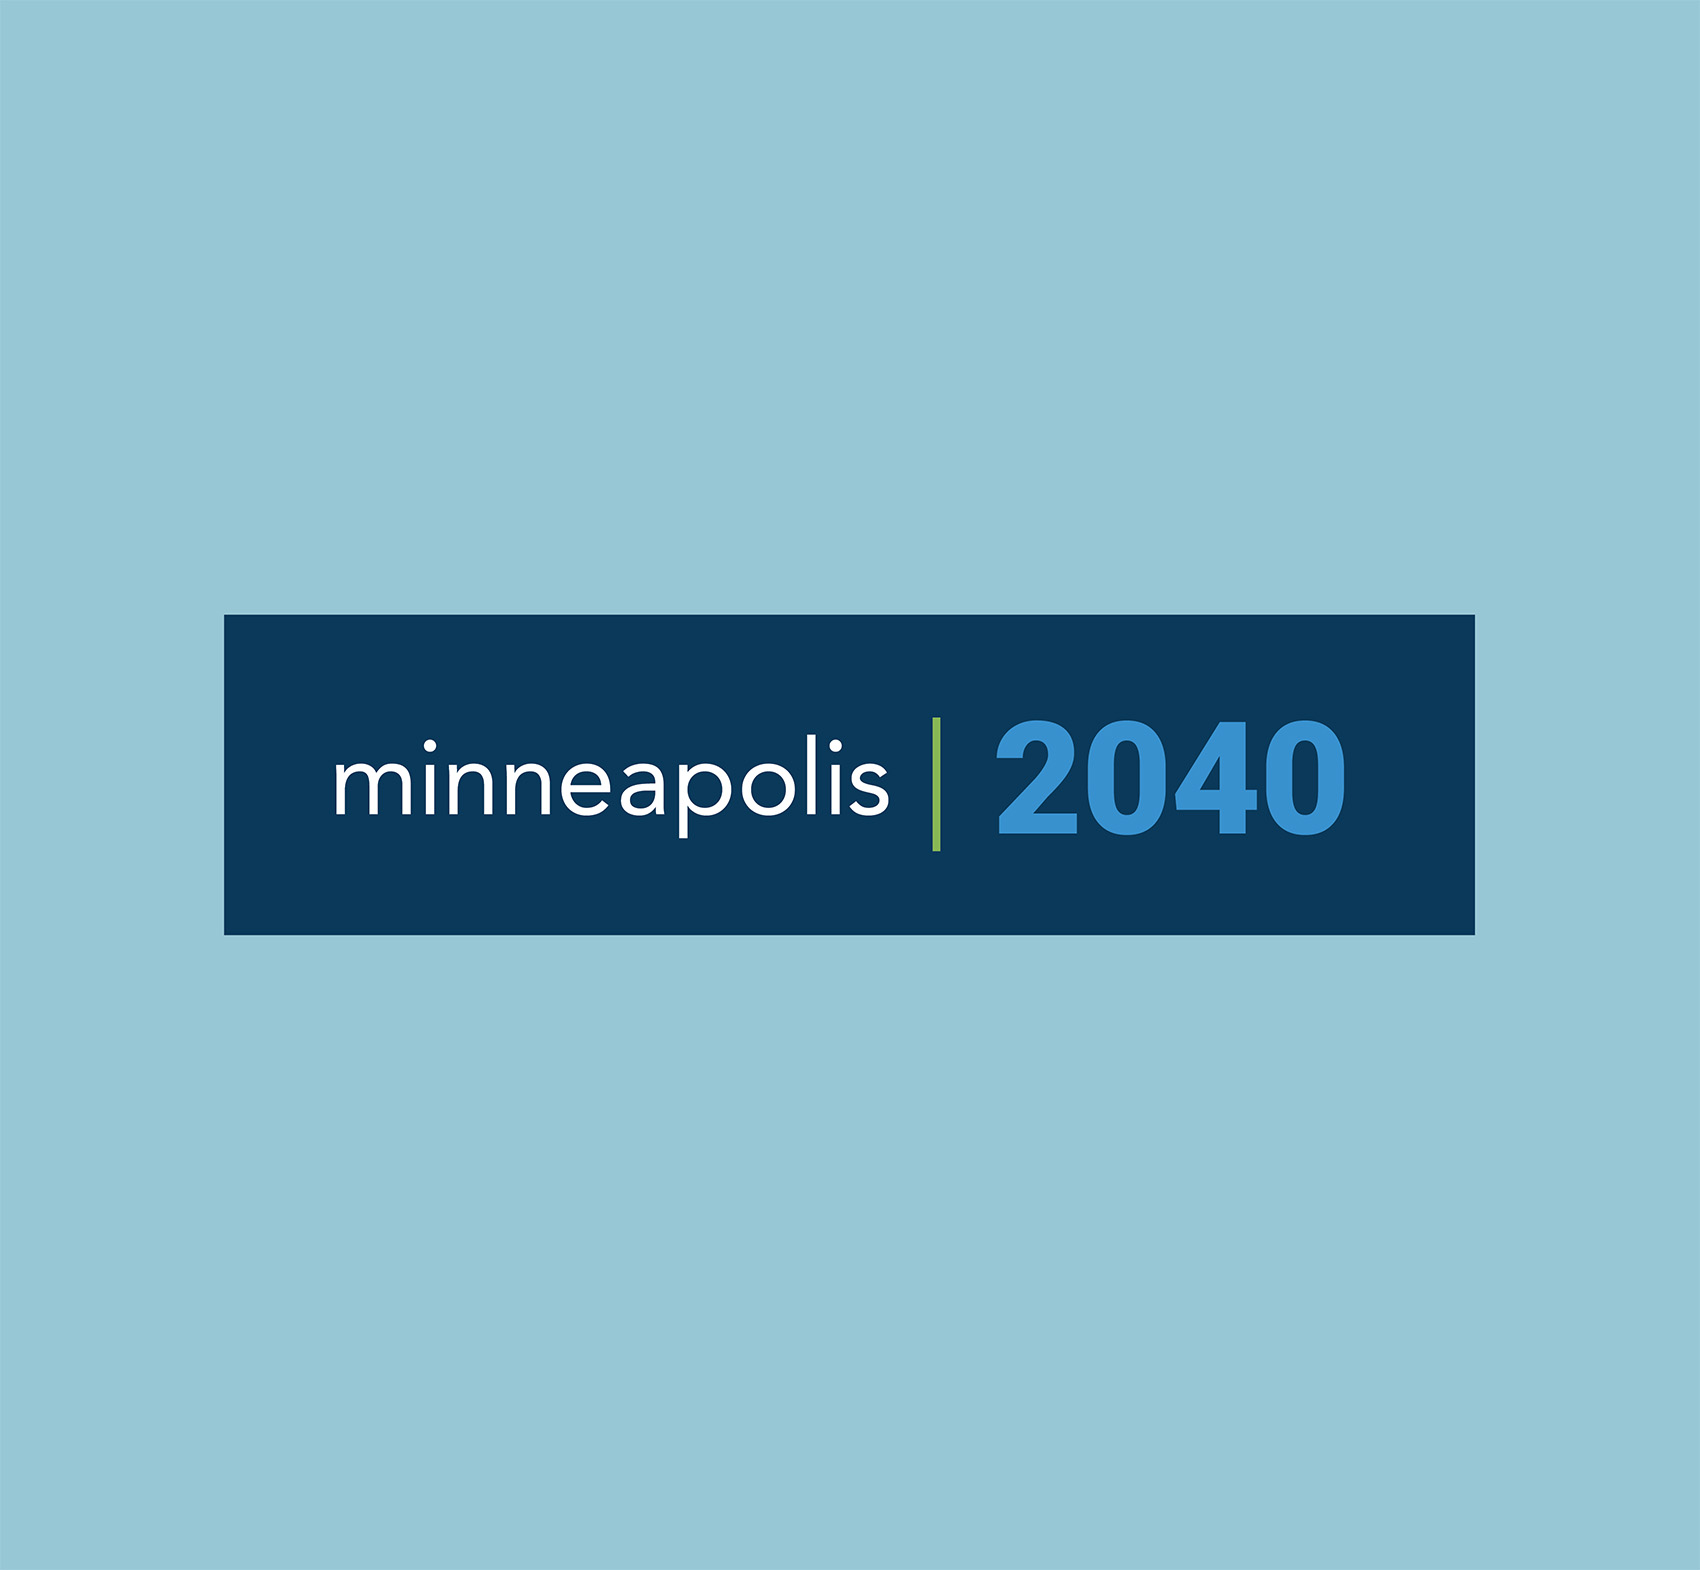 Minneapolis 2040 logo